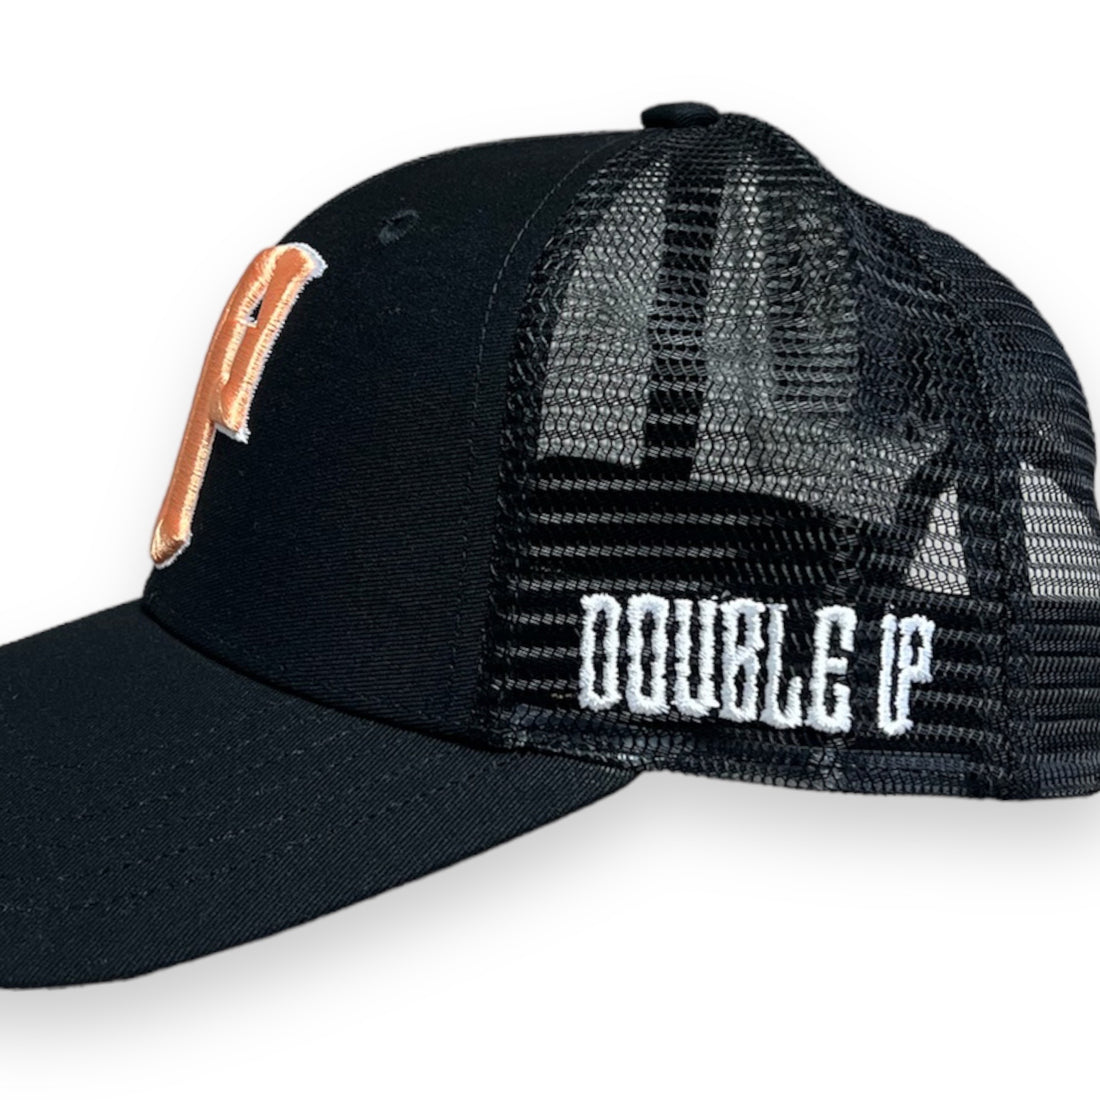 Double Up Black Streetwear Trucker Cap